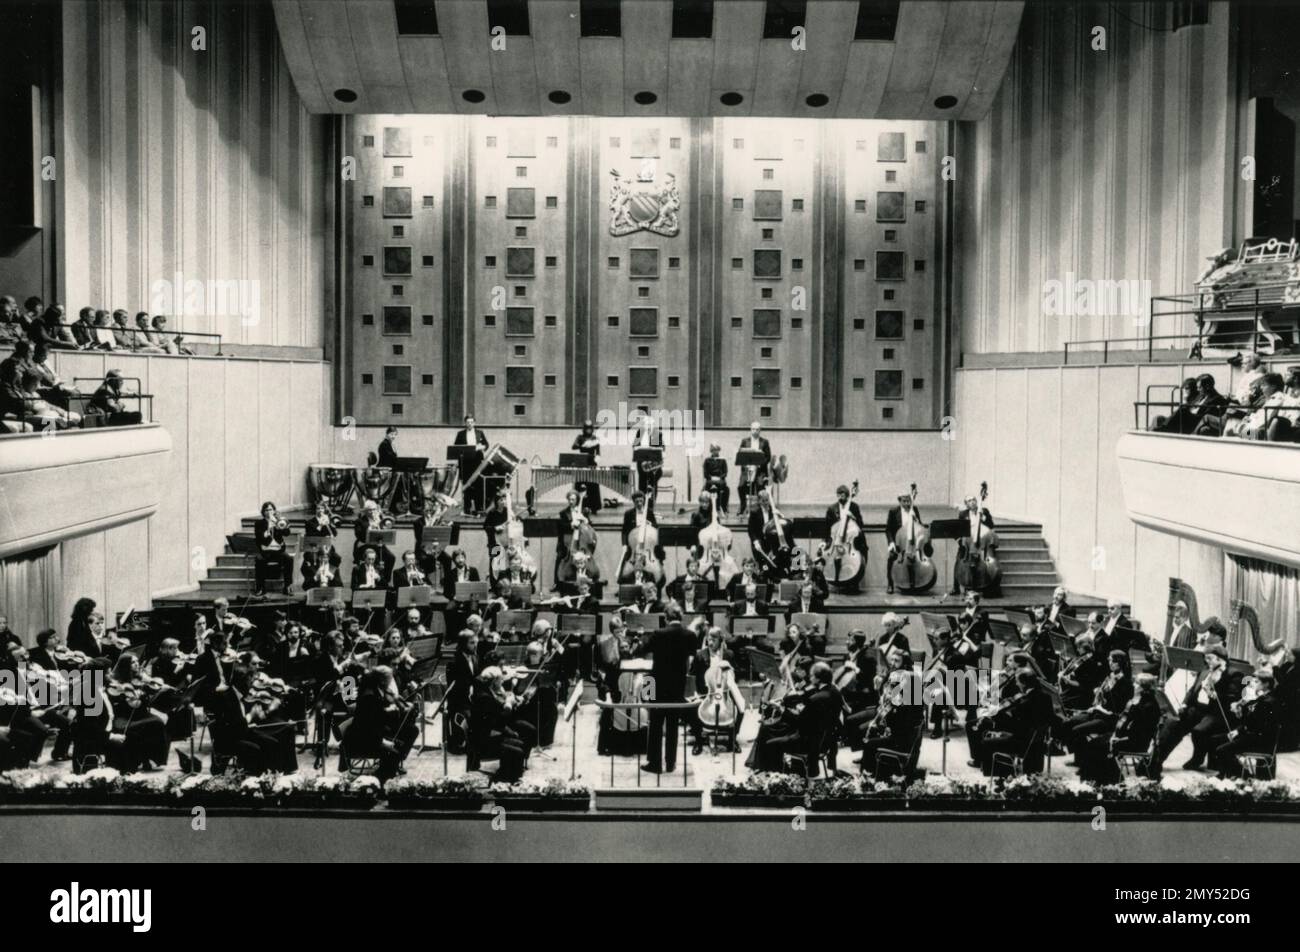 Stanislaw Skrowaczewski dirigeant l'orchestre de Halle dans le hall du libre-échange, Manchester, Royaume-Uni 1980s Banque D'Images